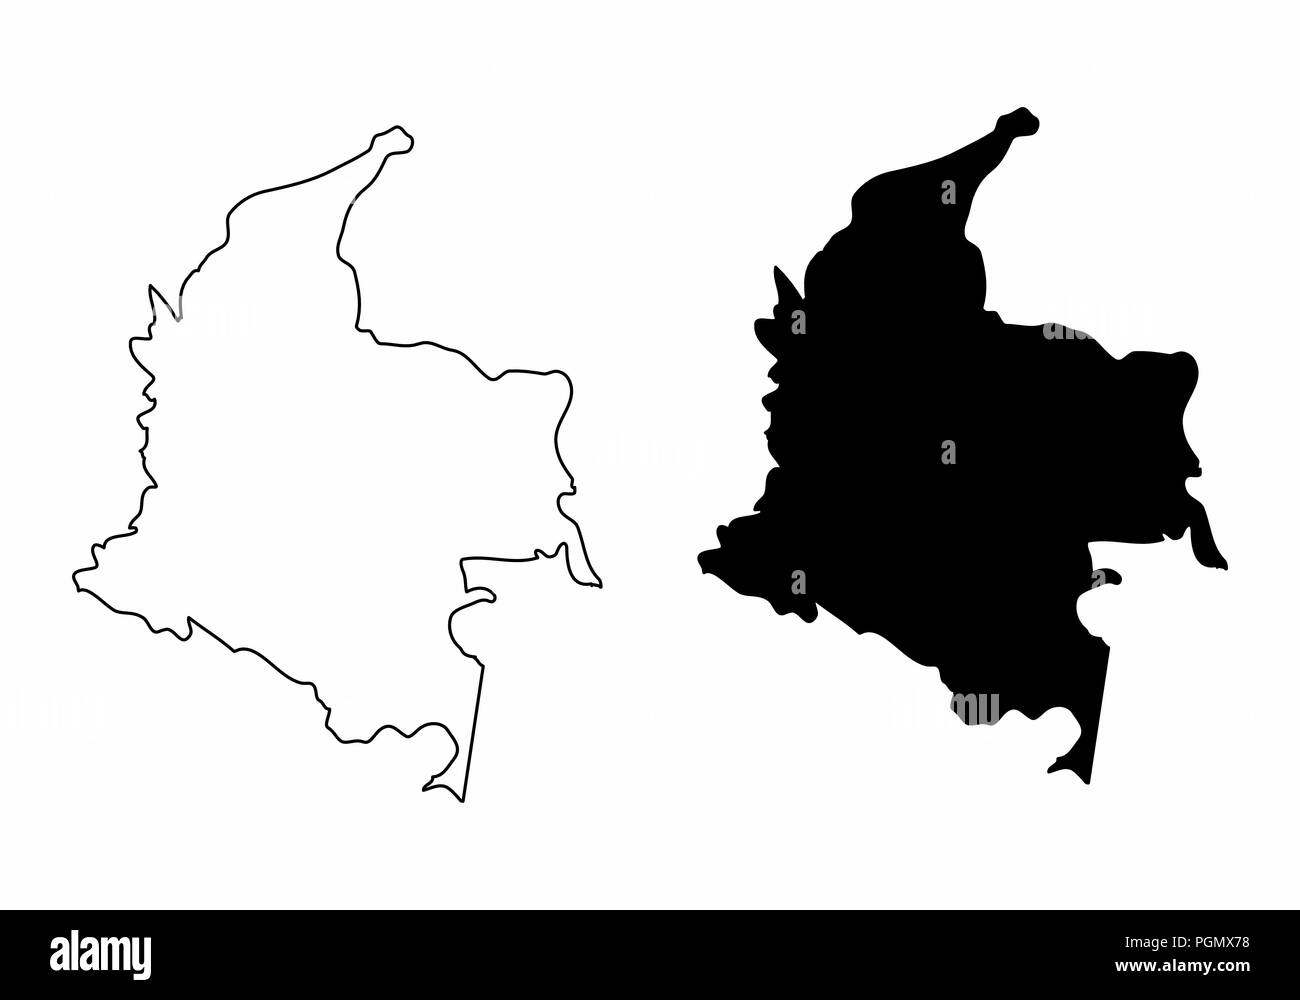 Vereinfachte Karten von Kolumbien. Schwarze und weiße Umrisse. Stock Vektor